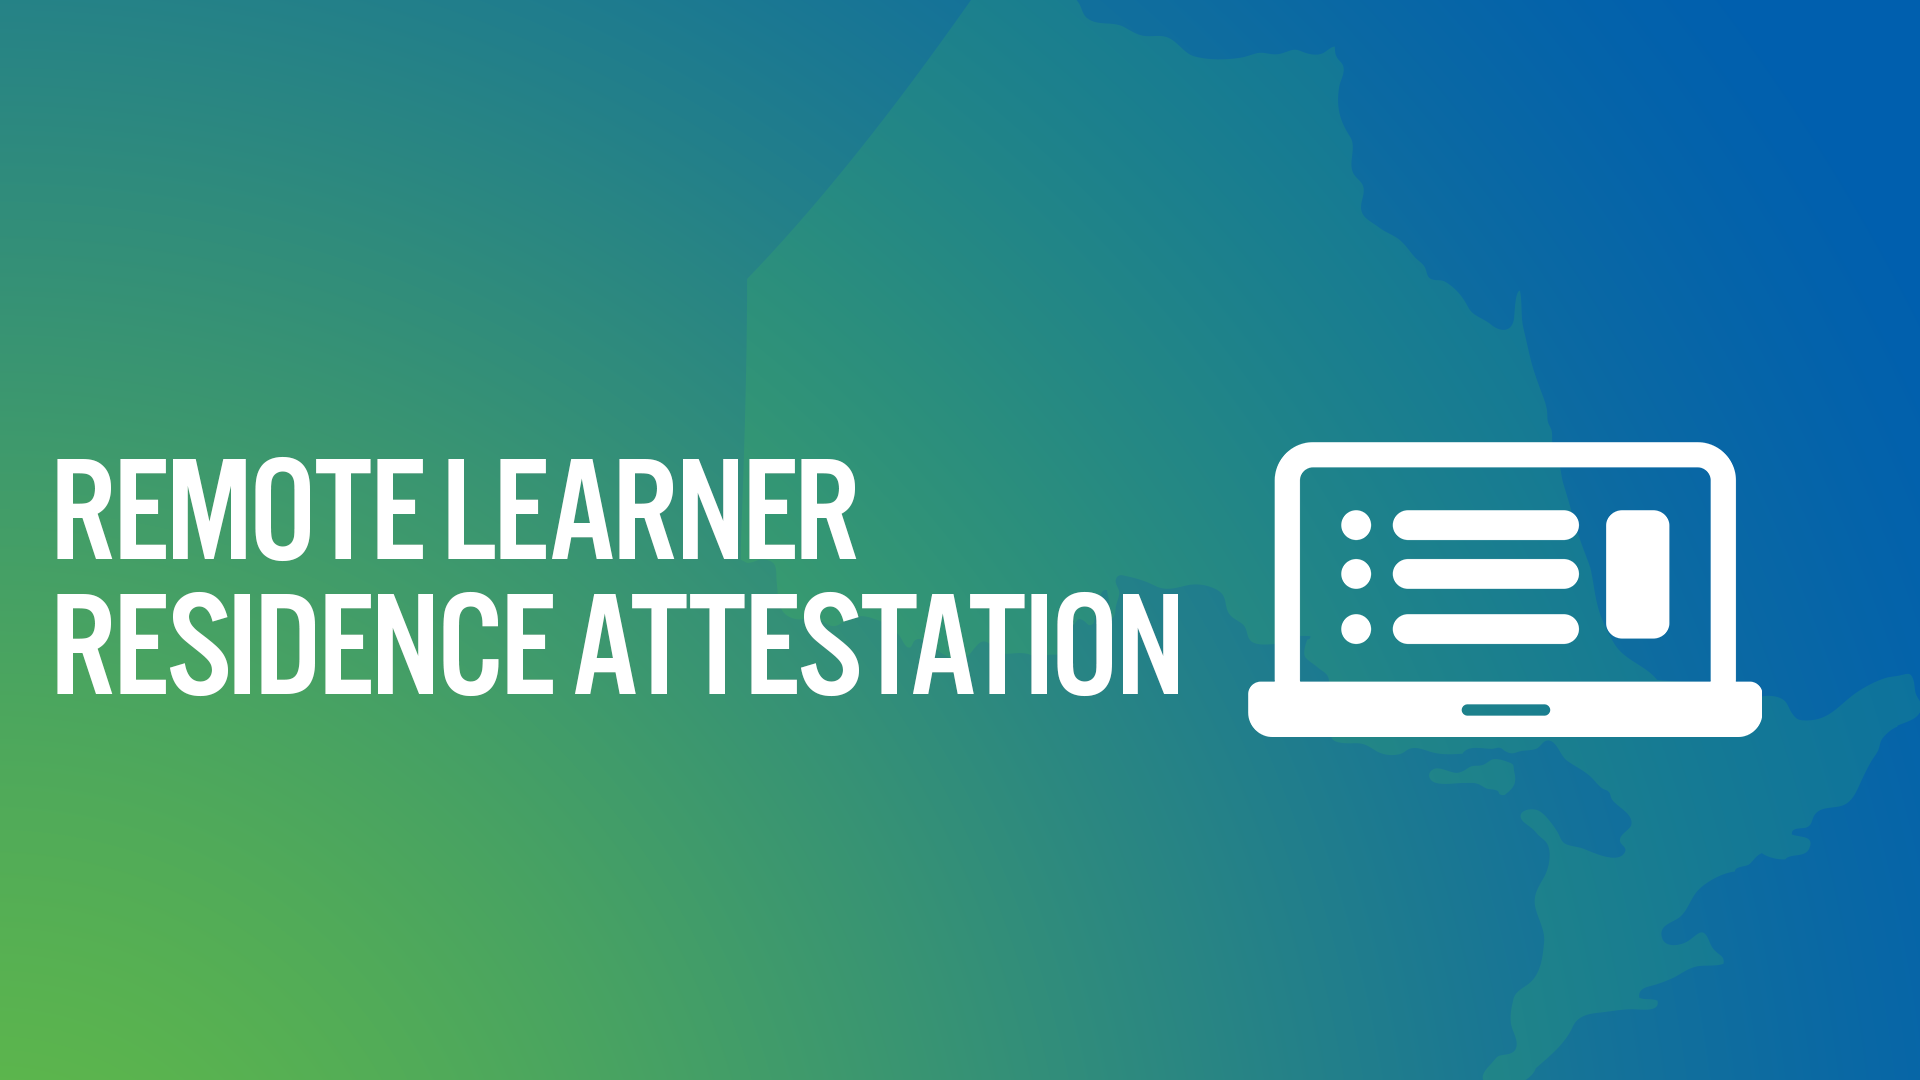 Remote Learner Residence Attestation